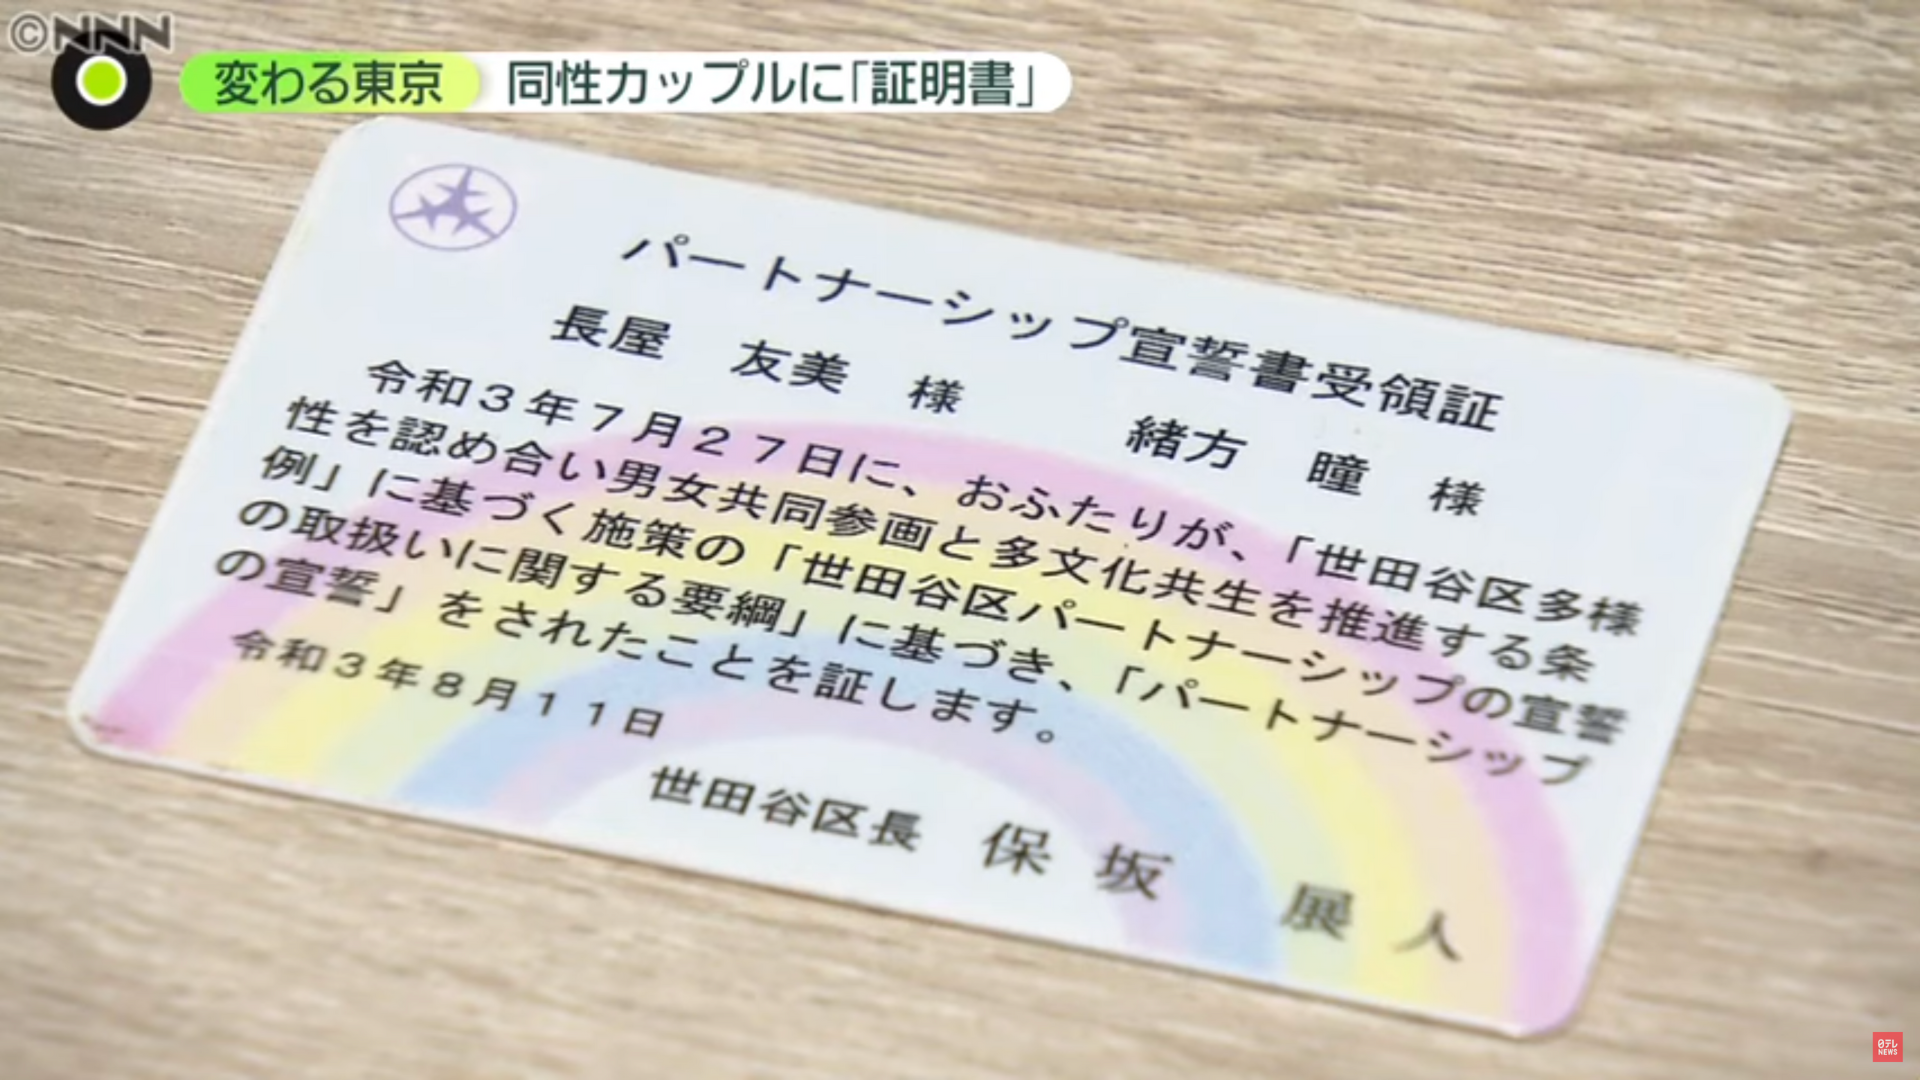 Thẻ được cấp cho các cặp đôi đăng ký Chế độ partner. Nguồn: 日テレNEWS